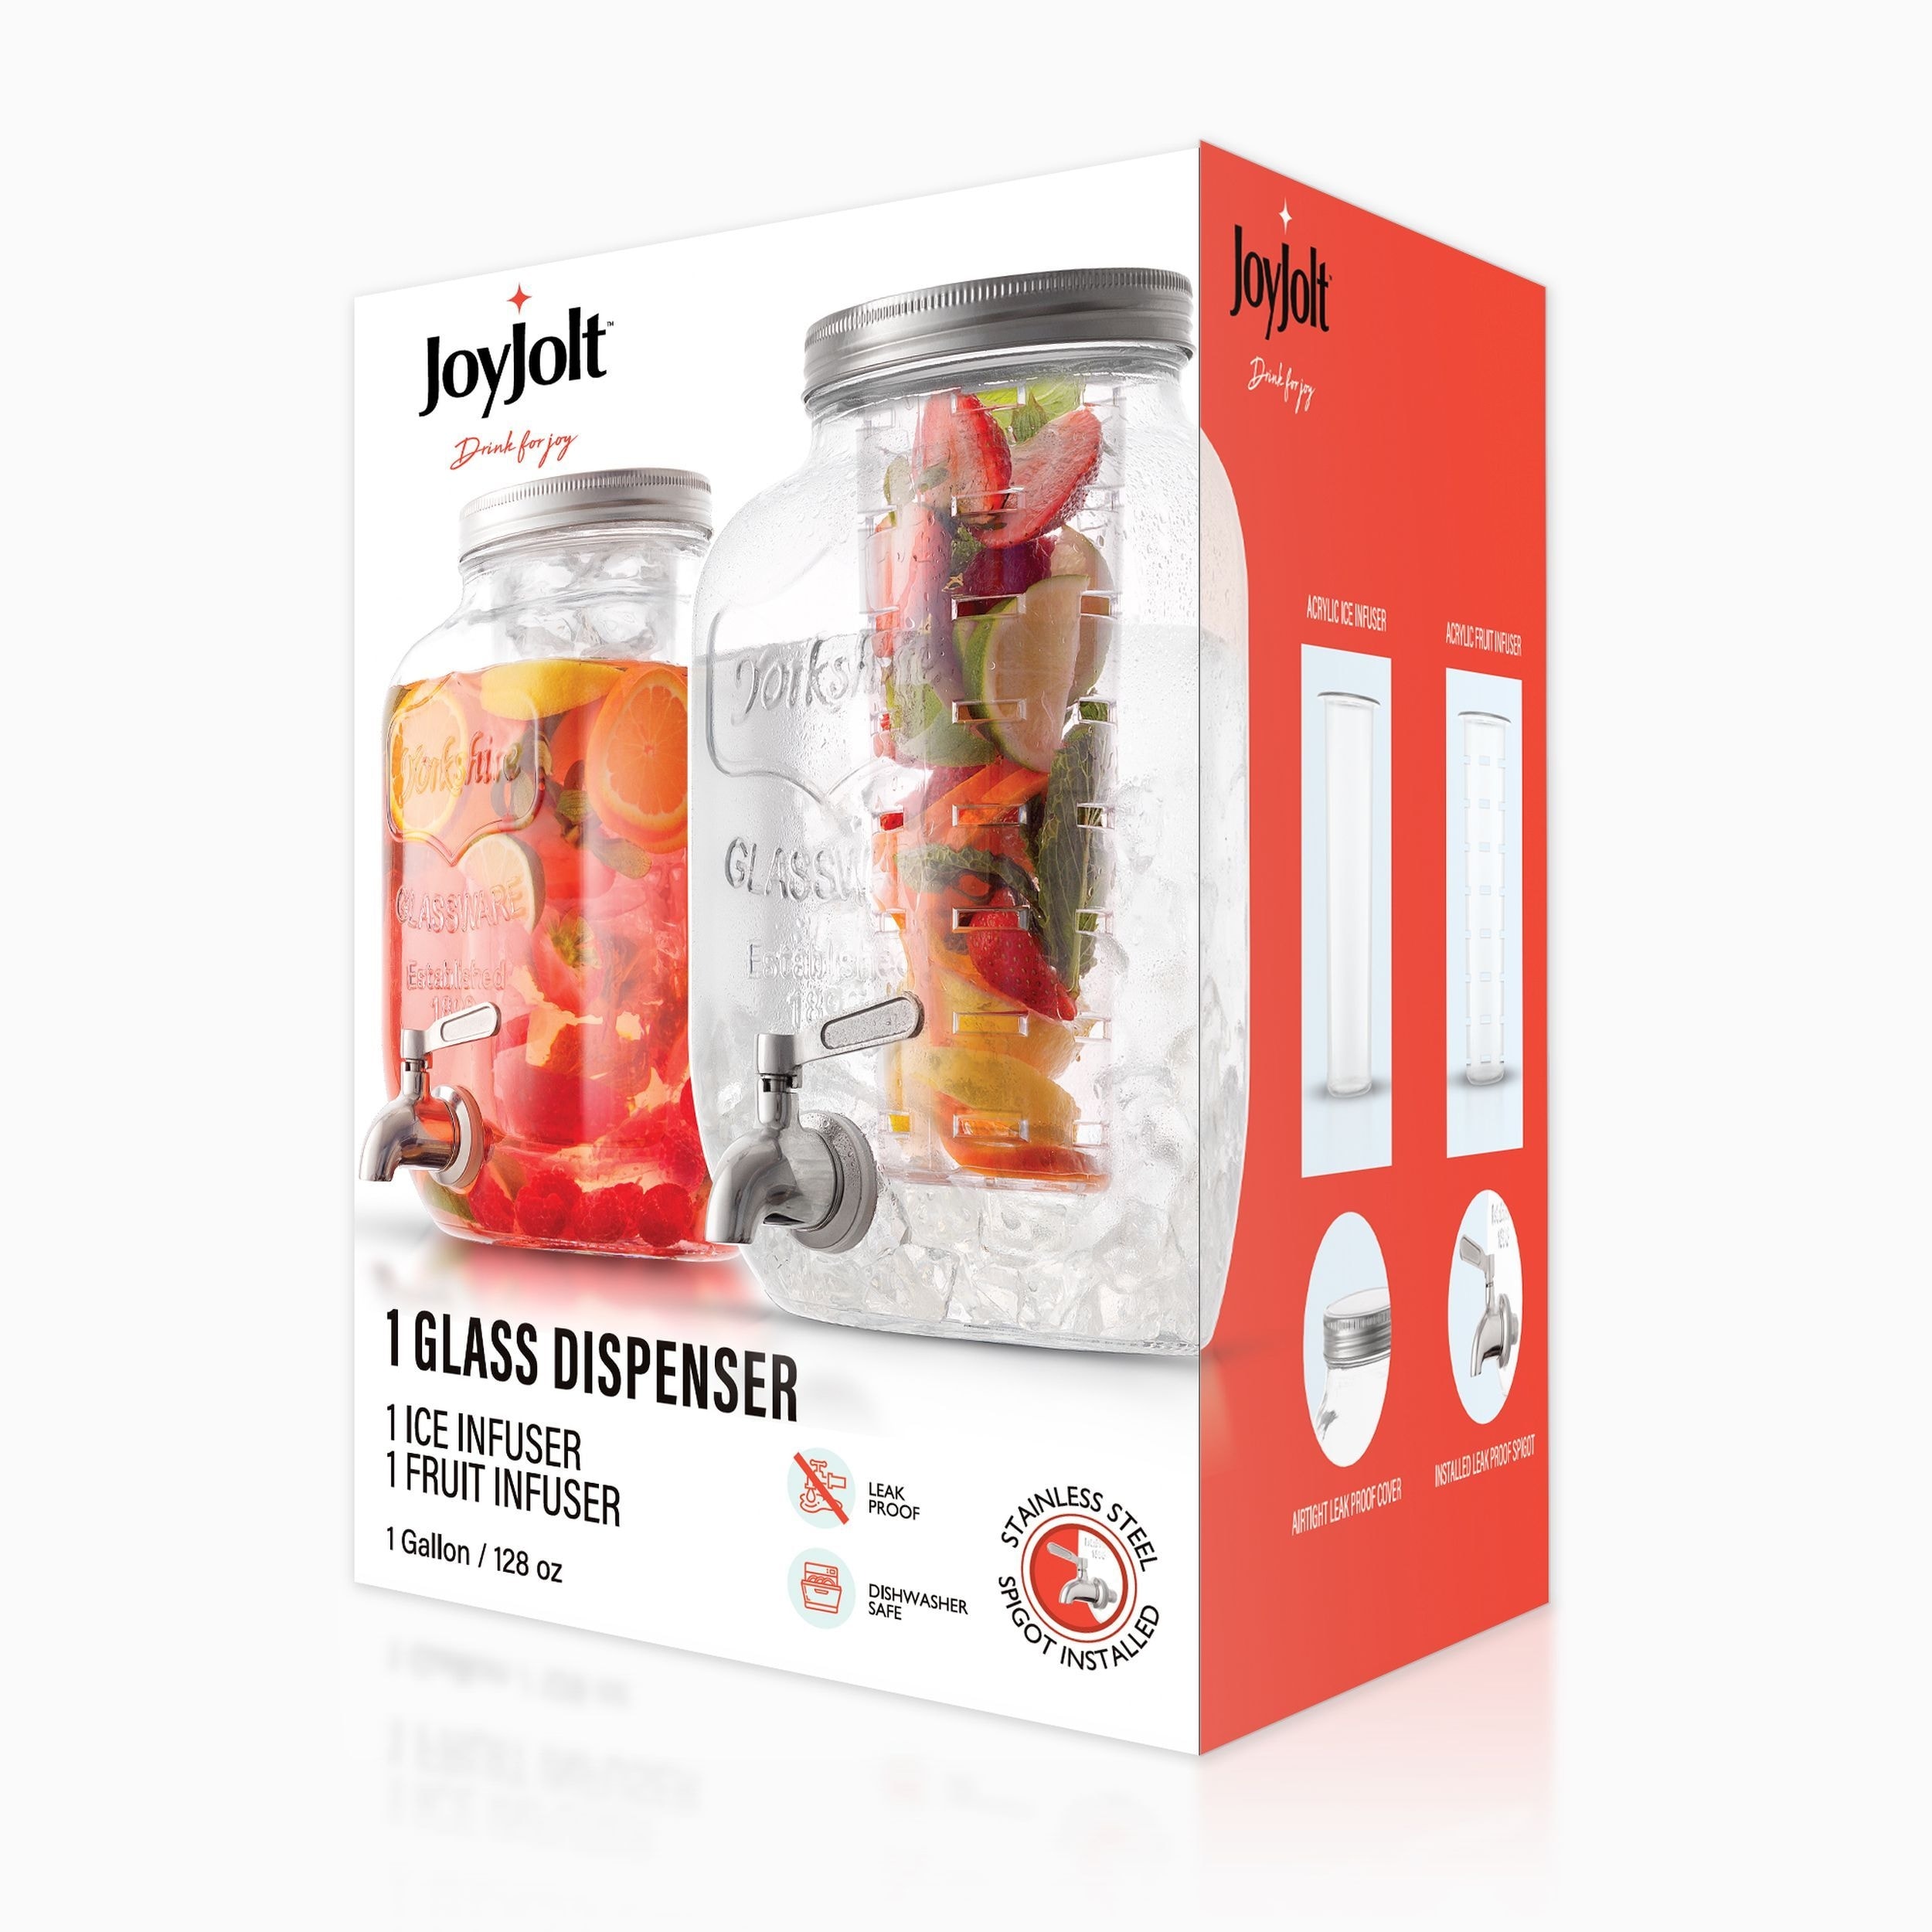 https://ak1.ostkcdn.com/images/products/is/images/direct/8deee71259bb0afa2d87c07c71d07b1949e9750a/JoyJolt-Glass-Drink-Dispenser-with-Spigot-%26-Fruit-Infuser---1-Gallon.jpg